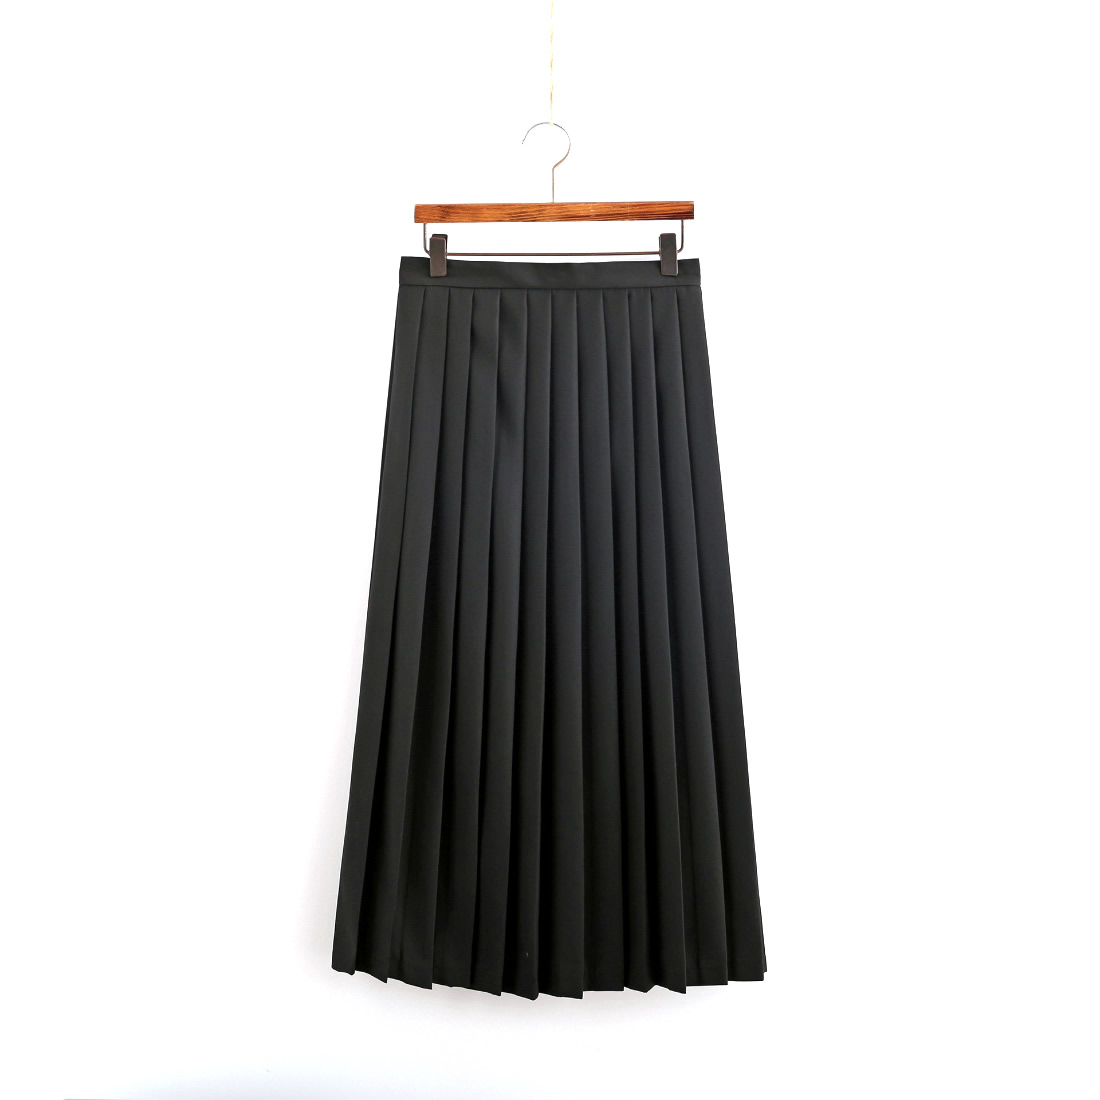 Black, very long skirt (80cm)